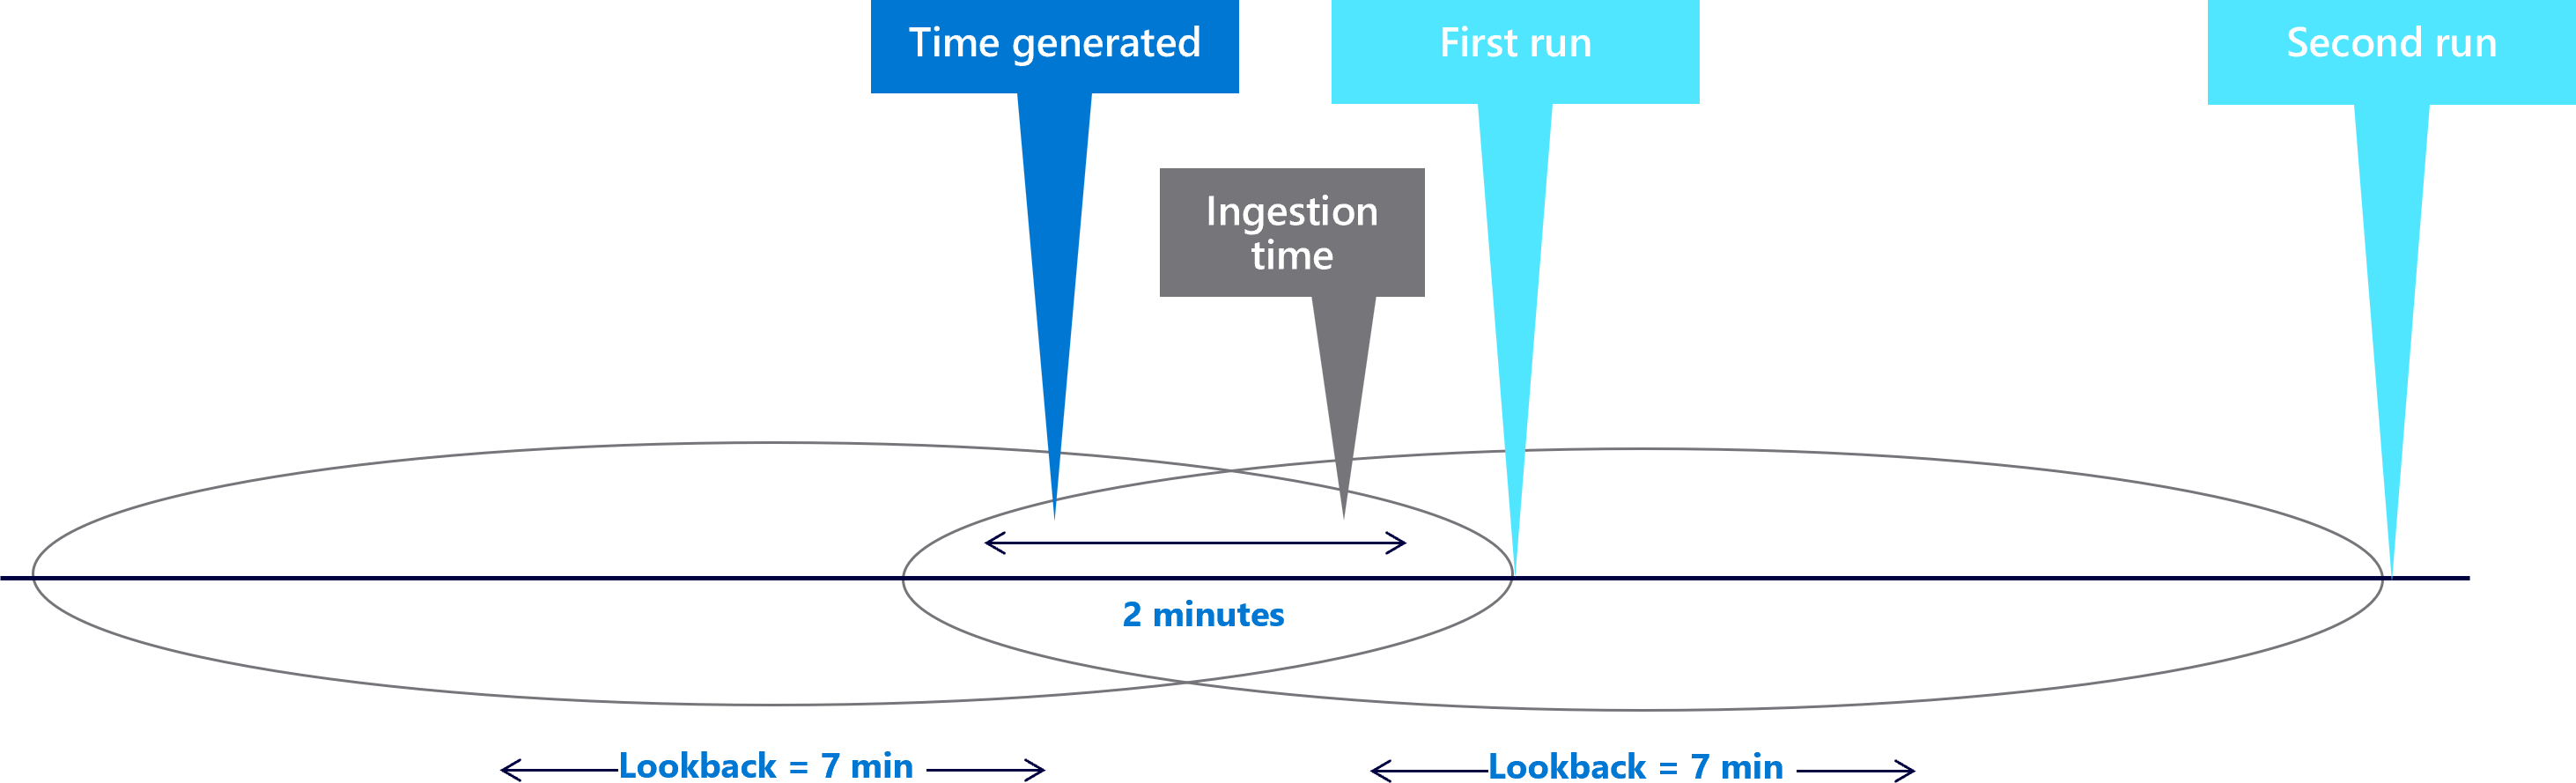 رسم تخطيطي يوضح كيفية تداخل نوافذ المراجعة في إنشاء التكرار.